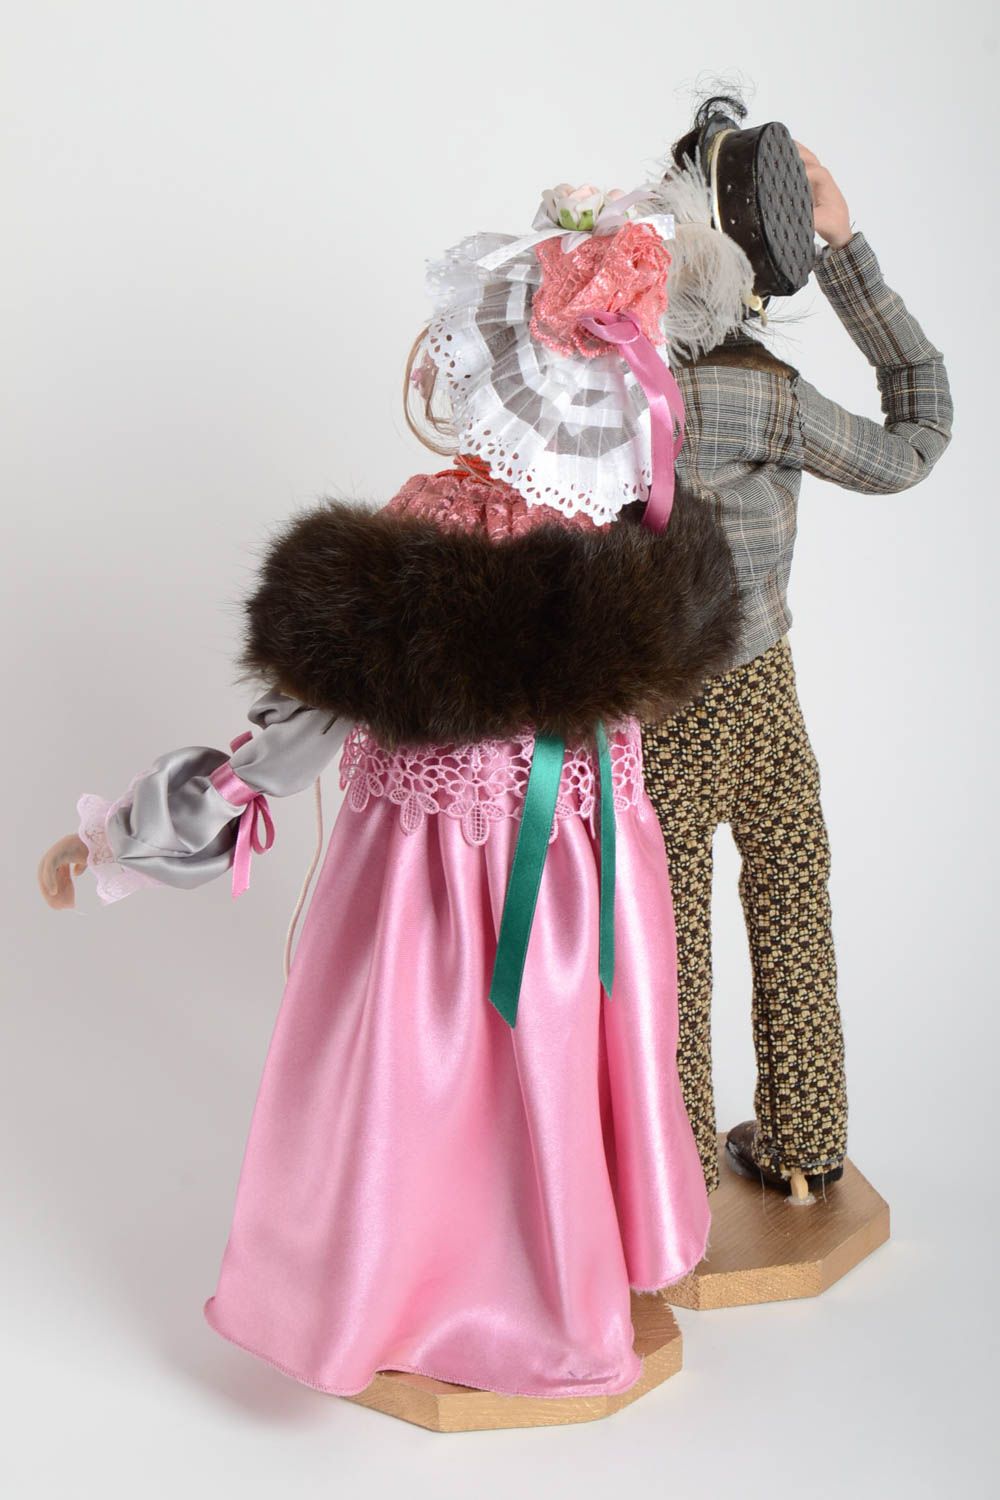 Авторские куклы интерьерные статуэтки Пара из ткани и пластика ручной работы фото 5